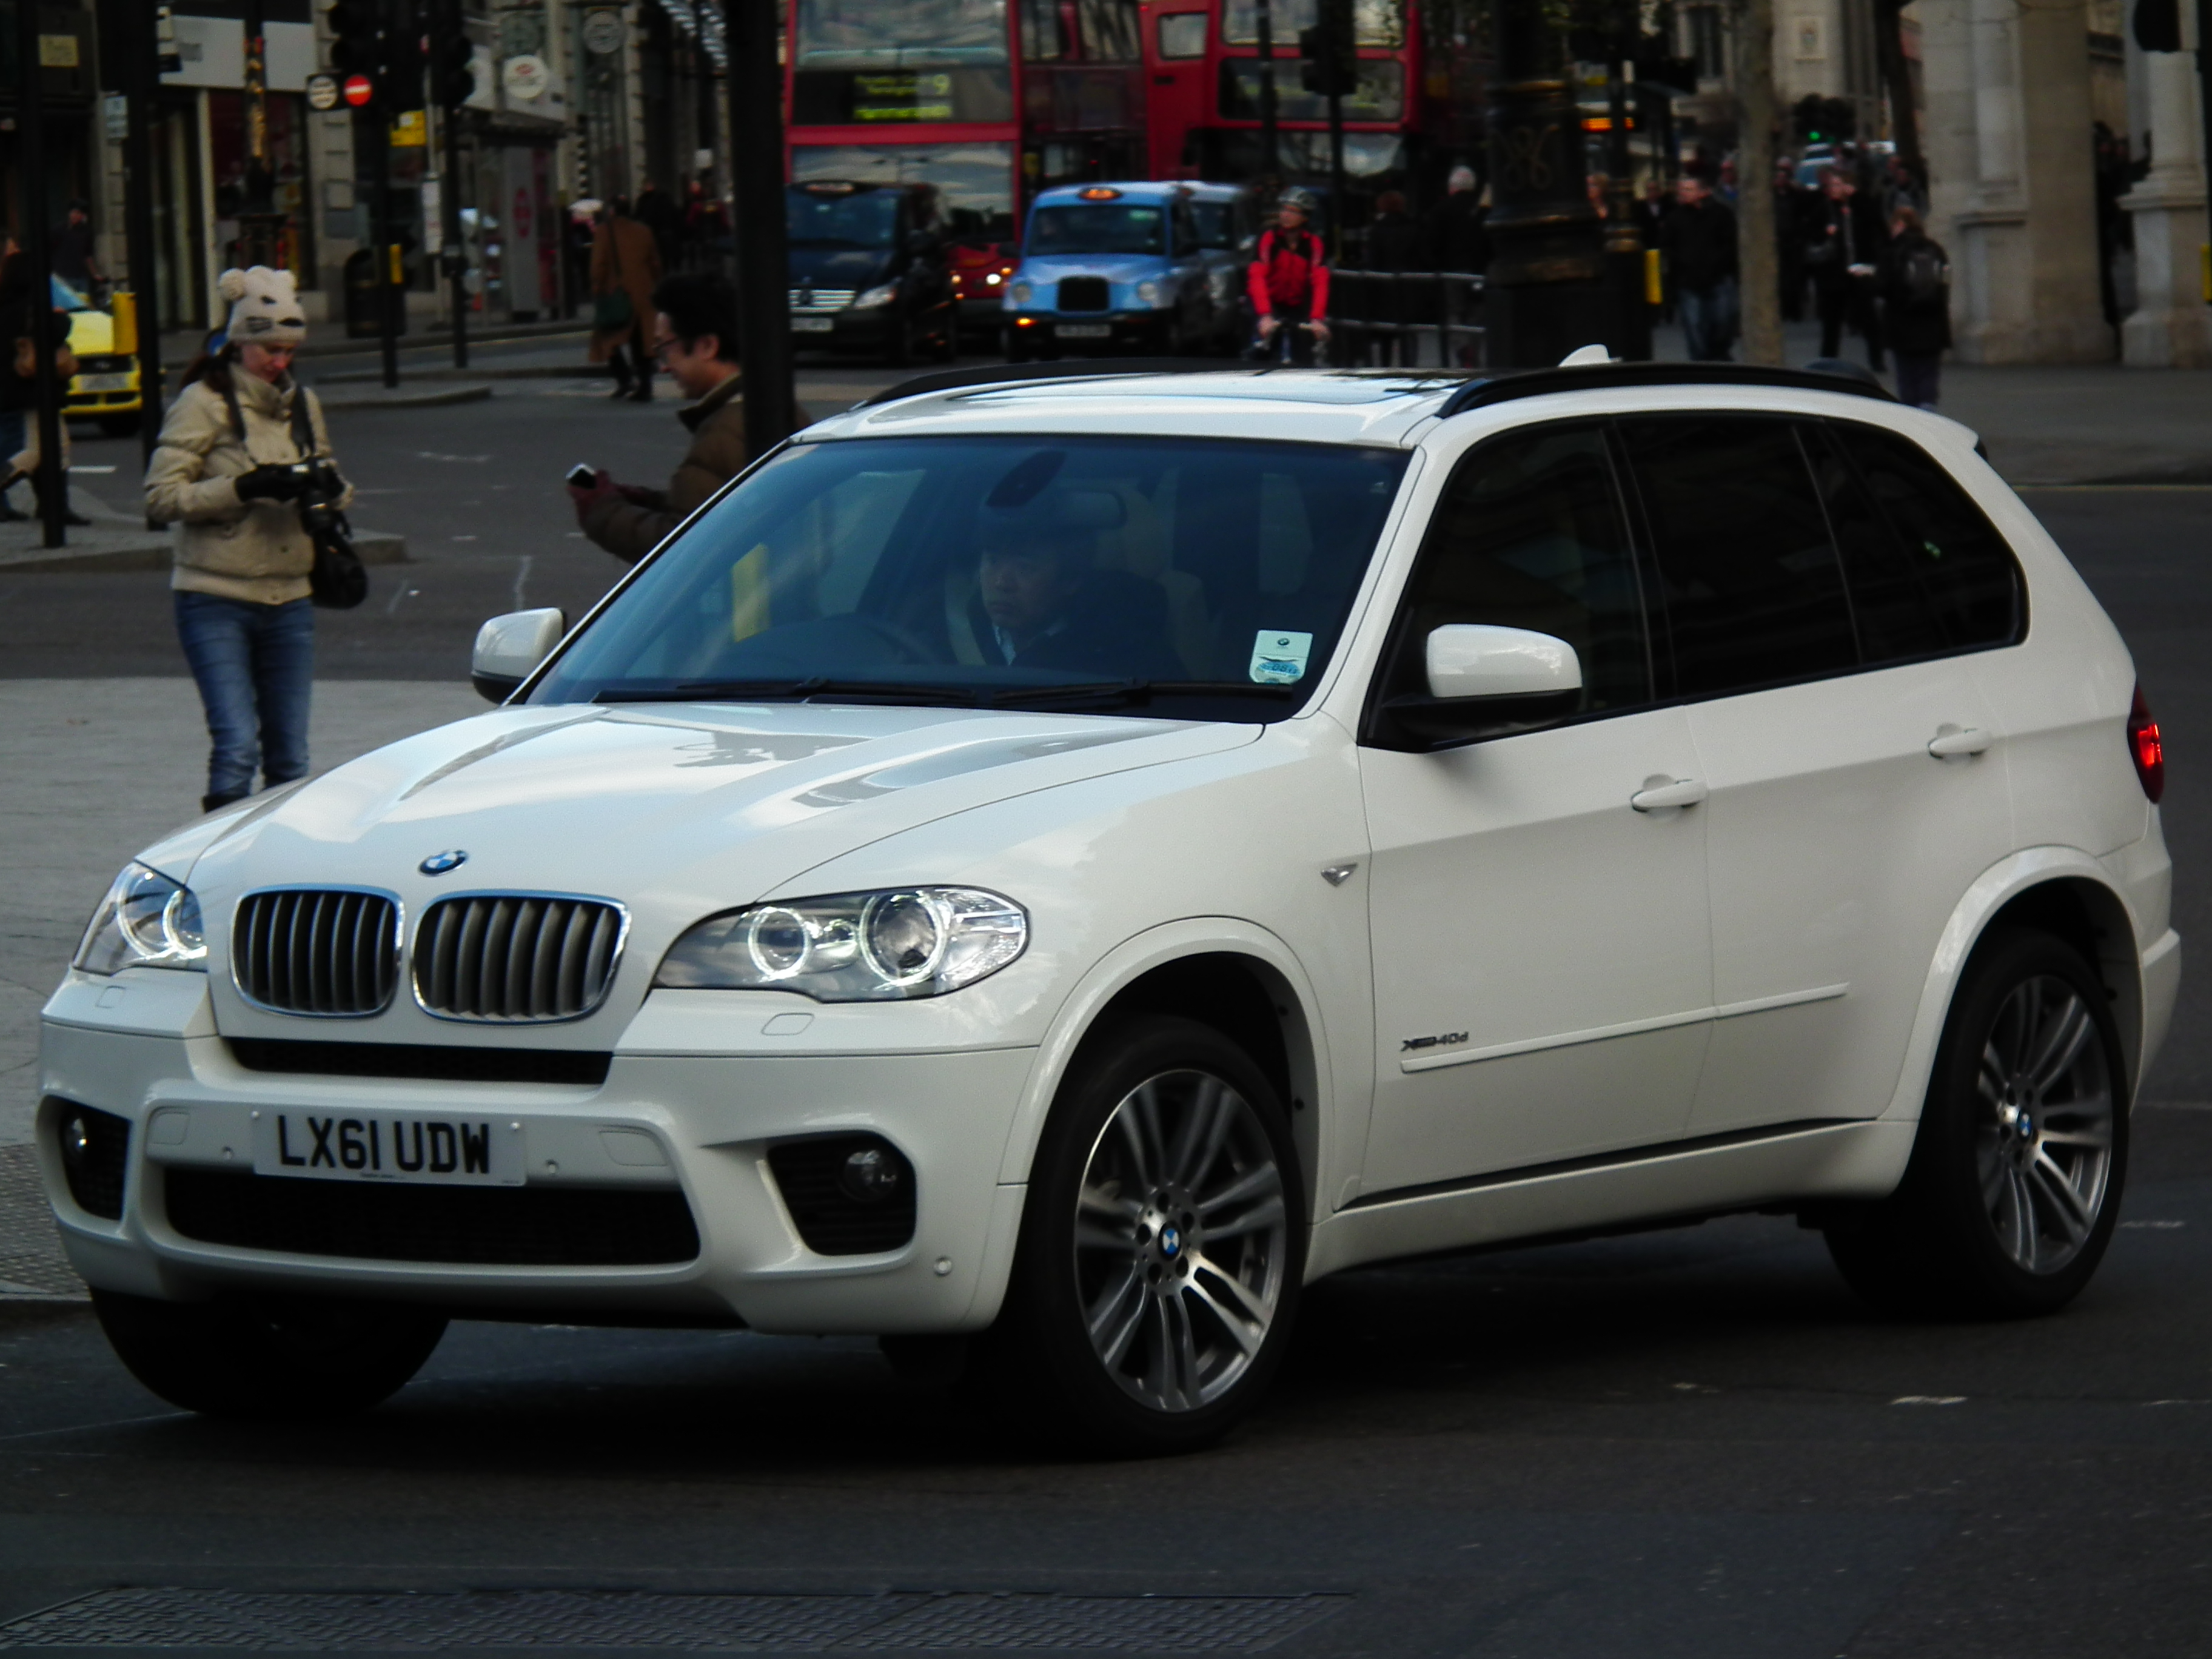 BMW X5 M Sport | Flickr - Photo Sharing!